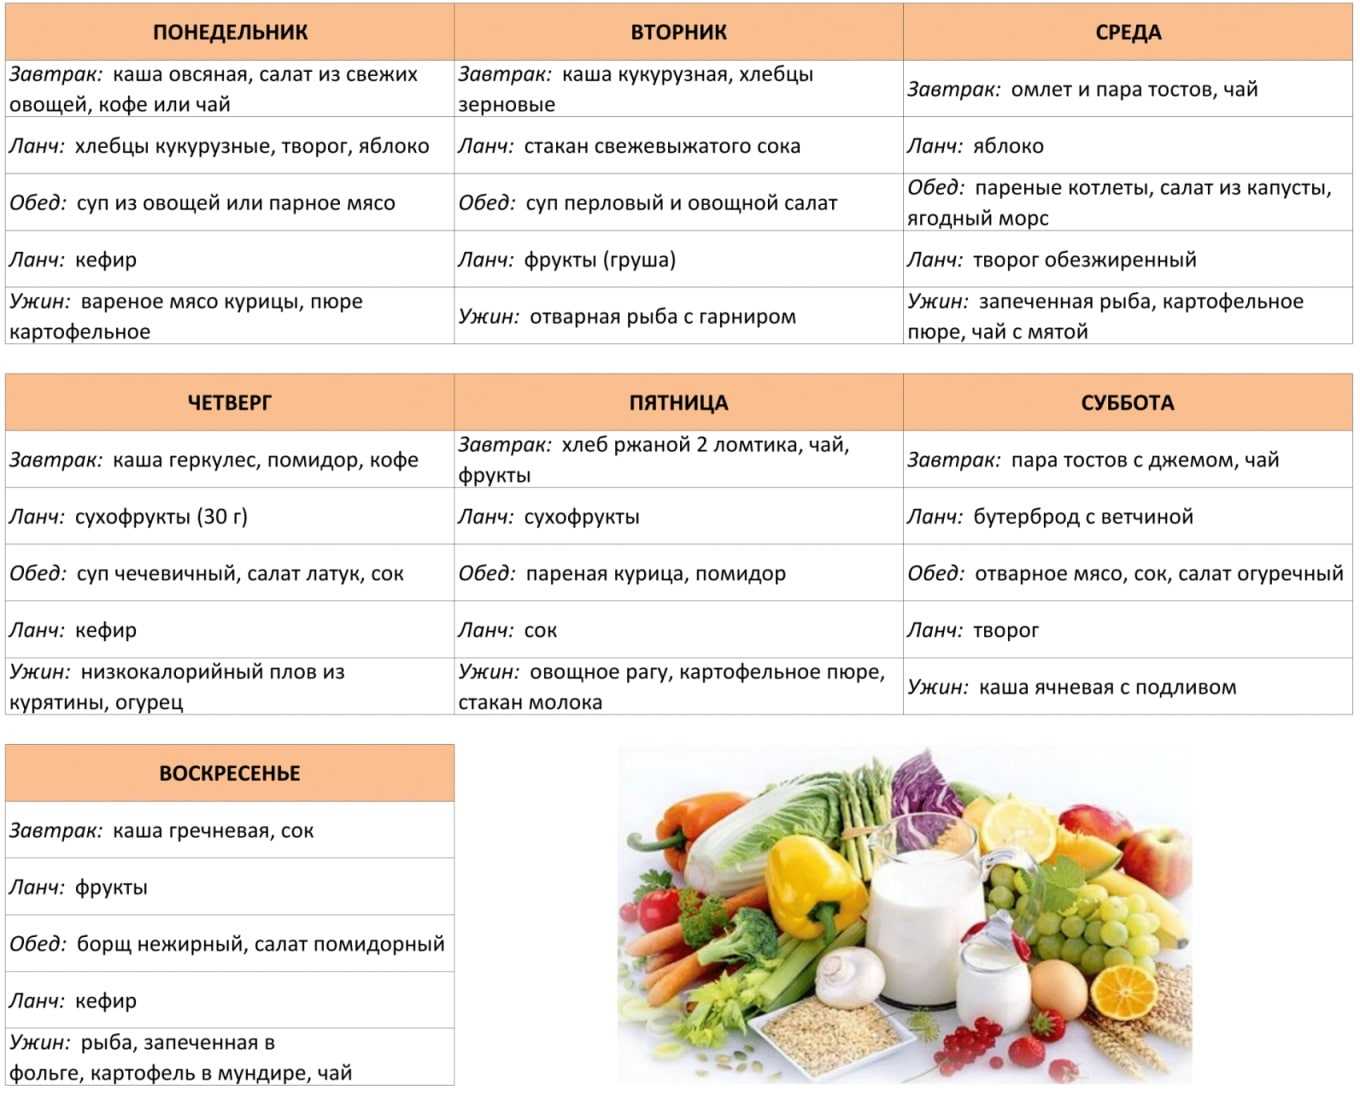 Кефирно-овсяная диета для похудения: отзывы о результатах методики | диеты и рецепты